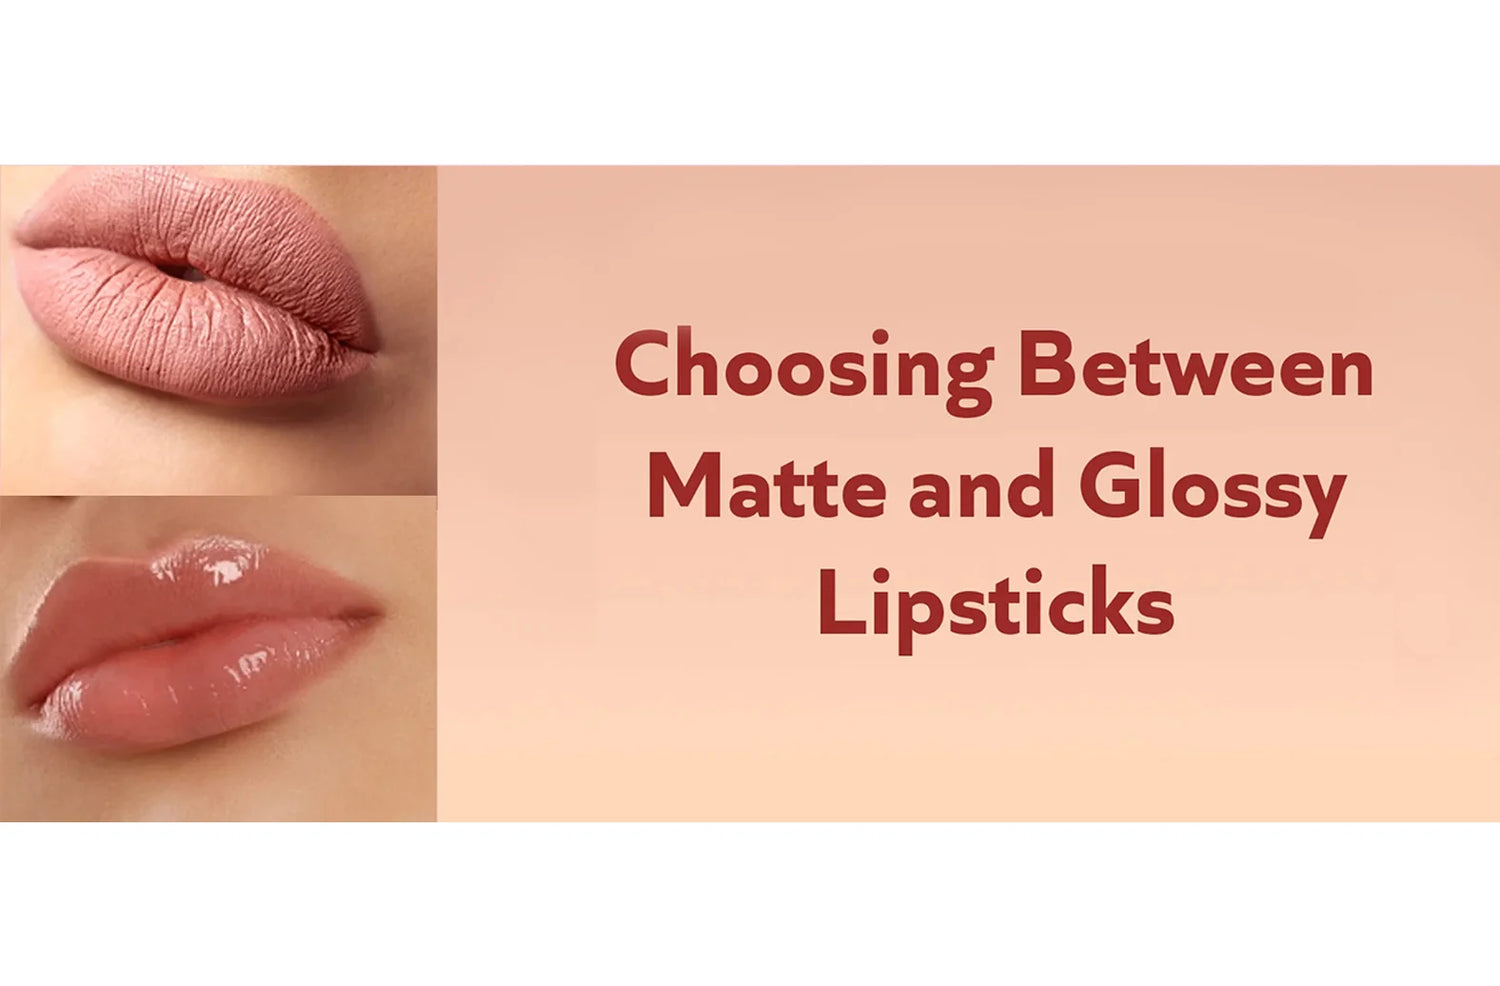 Matte lipstick vs glossy lipstick